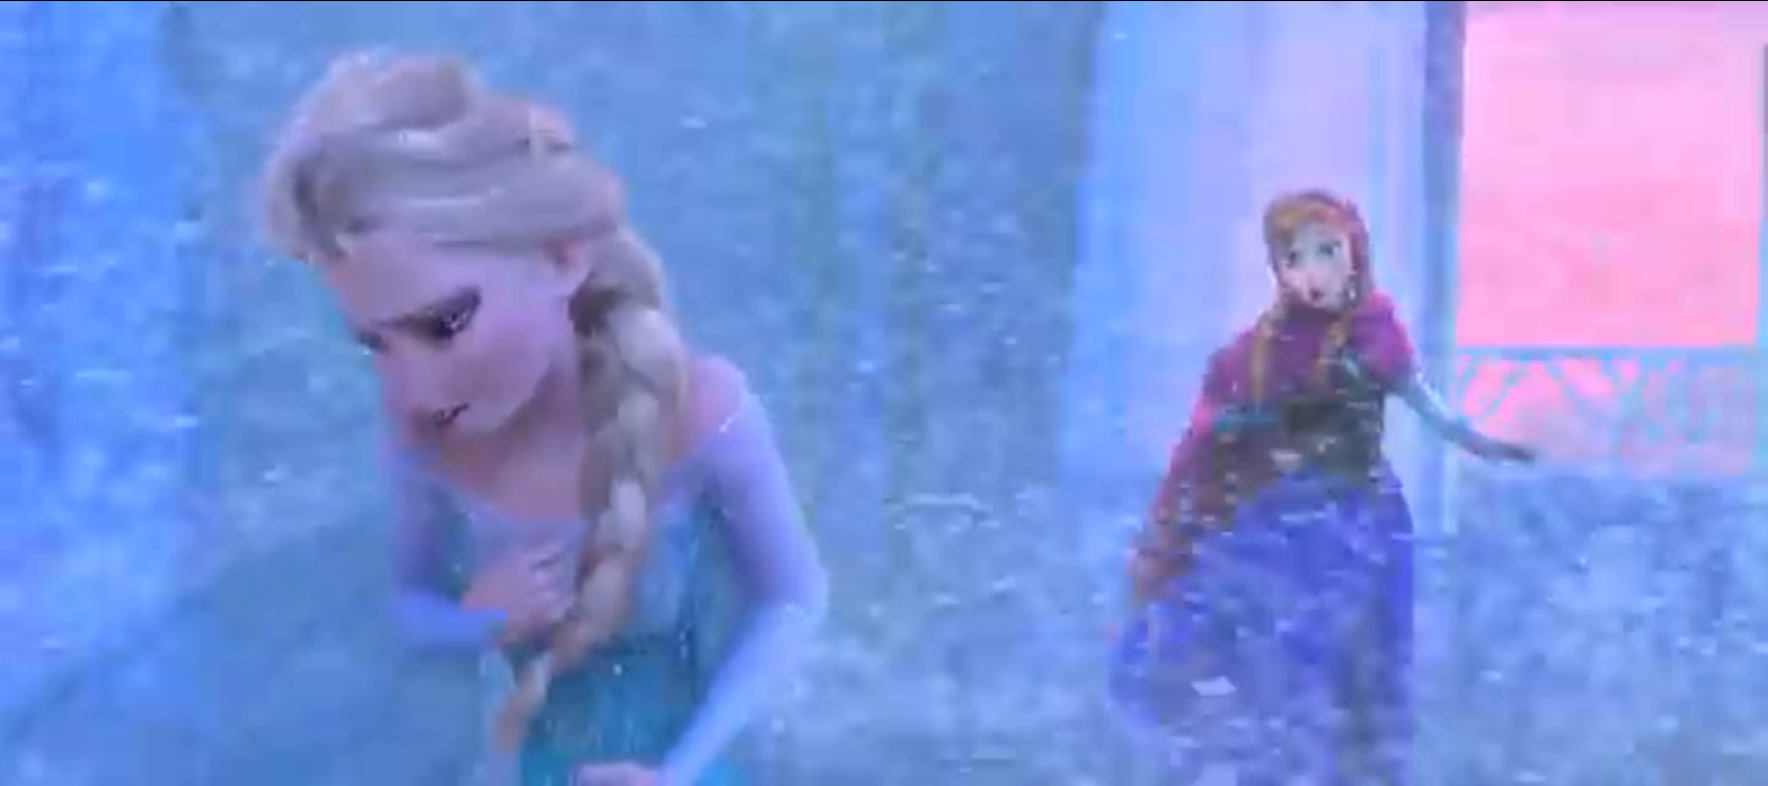 アナと雪の女王 Frozen 28 For The First Time In Forever Reprise 生まれて初めて リプライズ 歌詞 アニメスクリプトで英語学習 Anime Script English